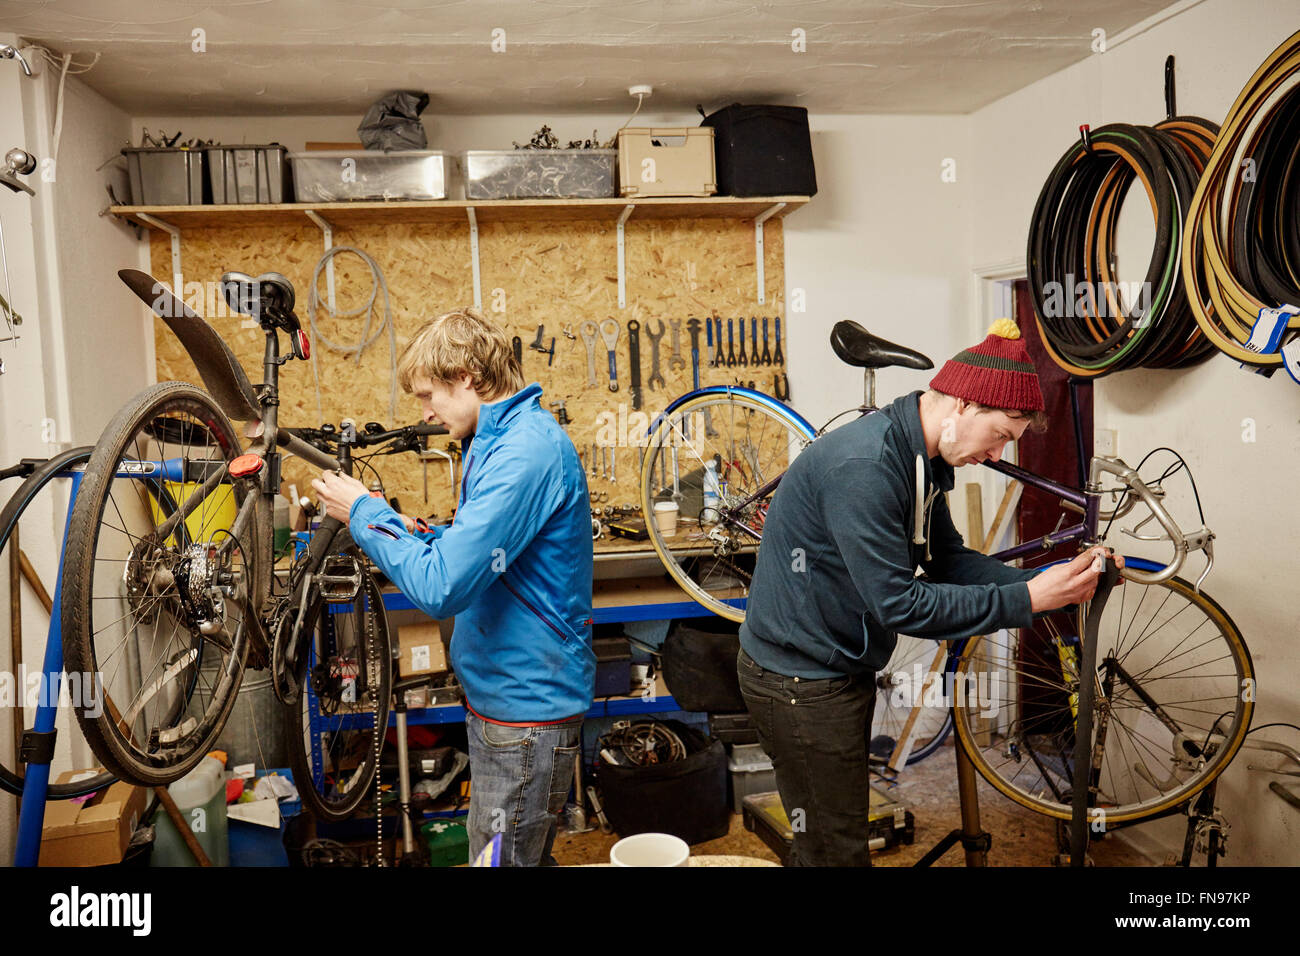 Zwei junge Männer in einem Zyklus-Shop sprechen. Stockfoto